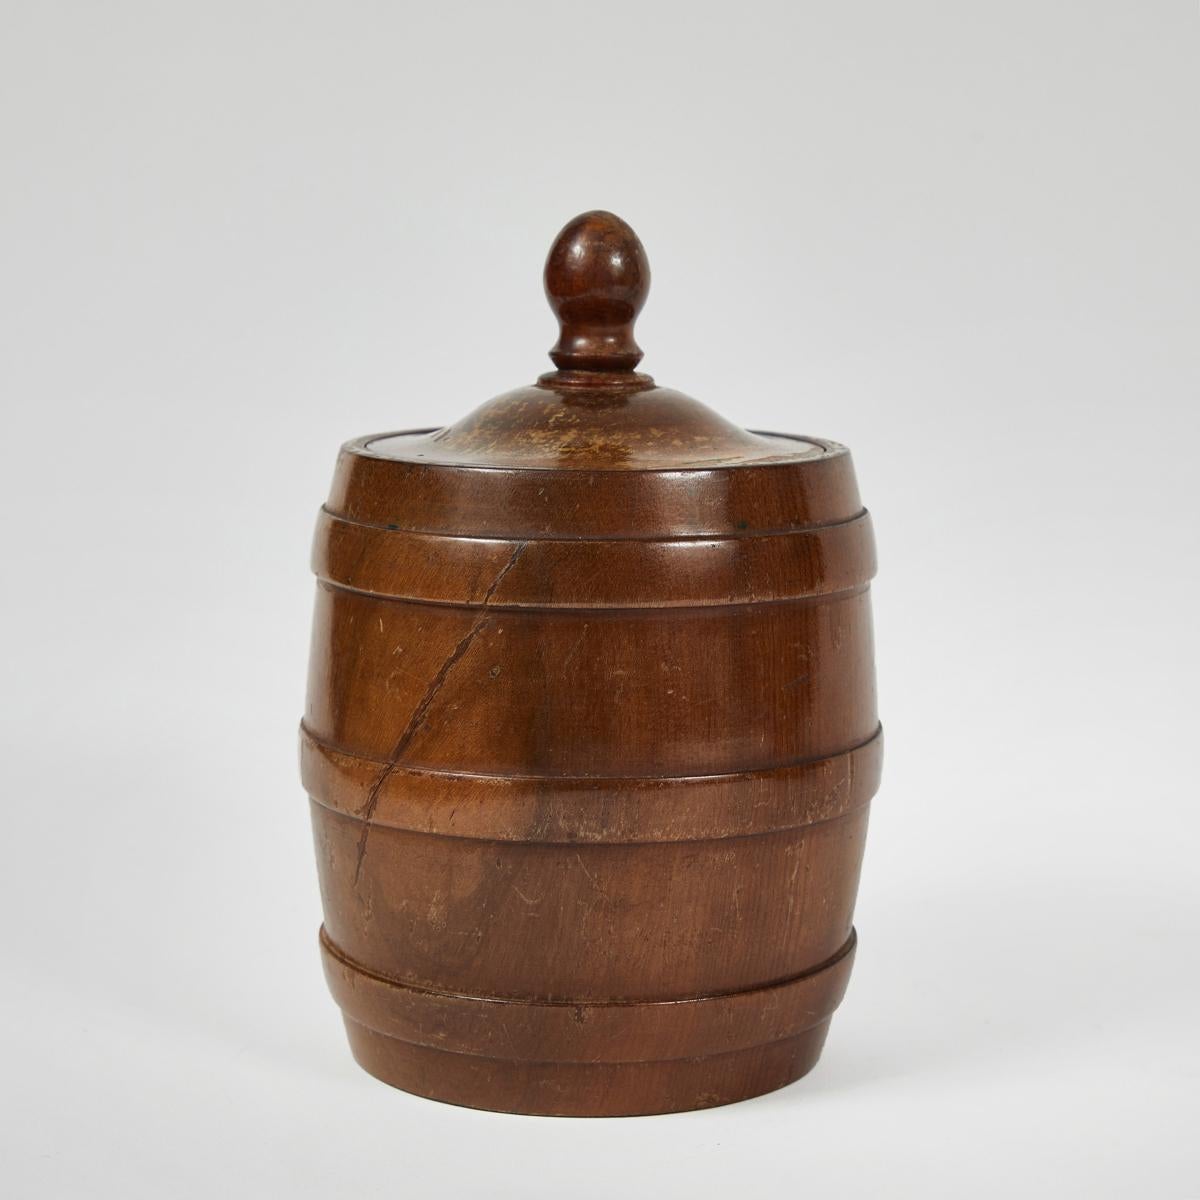 Wooden tobacco jar from 1920s Belgium.